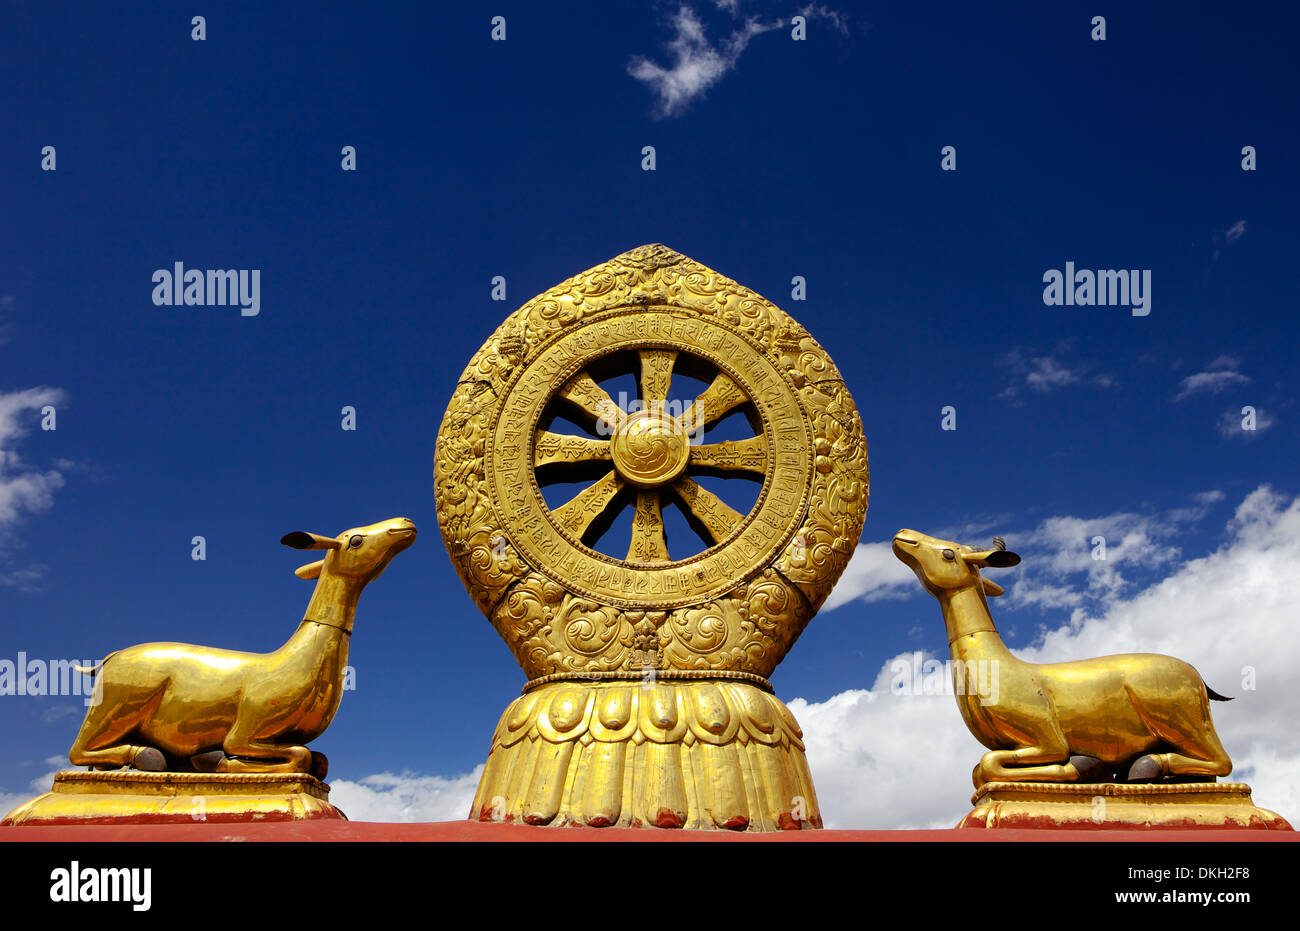 Eine goldene Dharma-Rad und Hirsch Skulpturen auf den Heiligen Jokhang Tempel Dach, Barkhor Square, Lhasa, Tibet, China Stockfoto